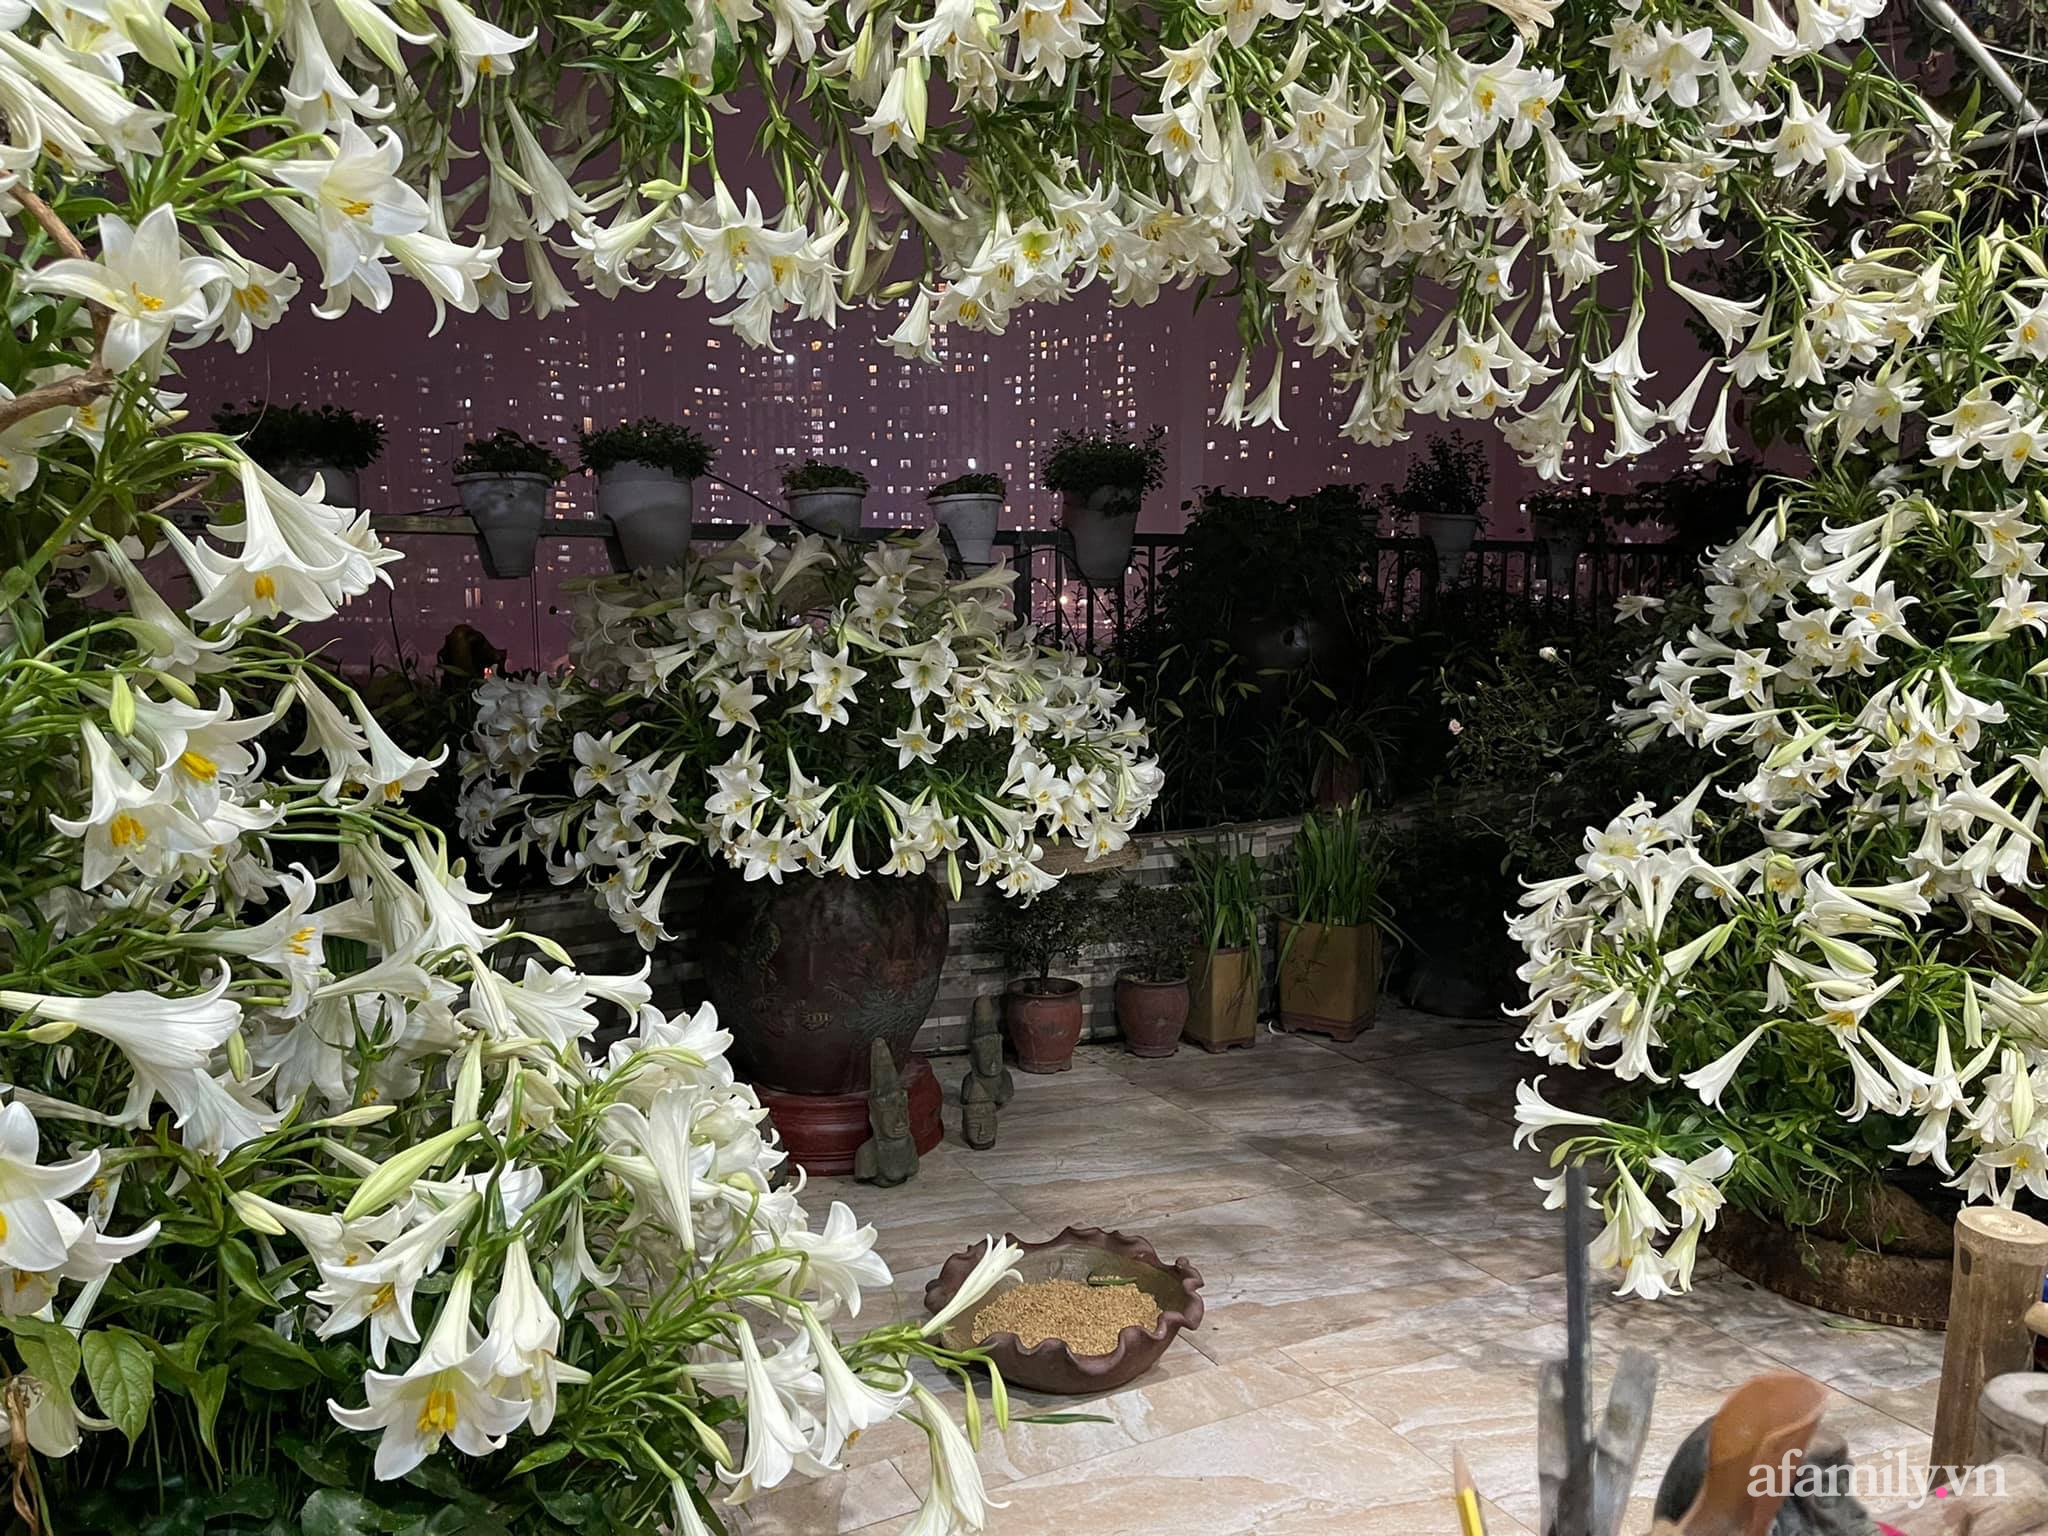 Sân thượng tháng 4 đẹp thanh khiết dịu dàng với 3500 bông loa kèn tỏa sắc hương nhờ bàn tay khéo léo của người phụ nữ Hà Thành - Ảnh 7.